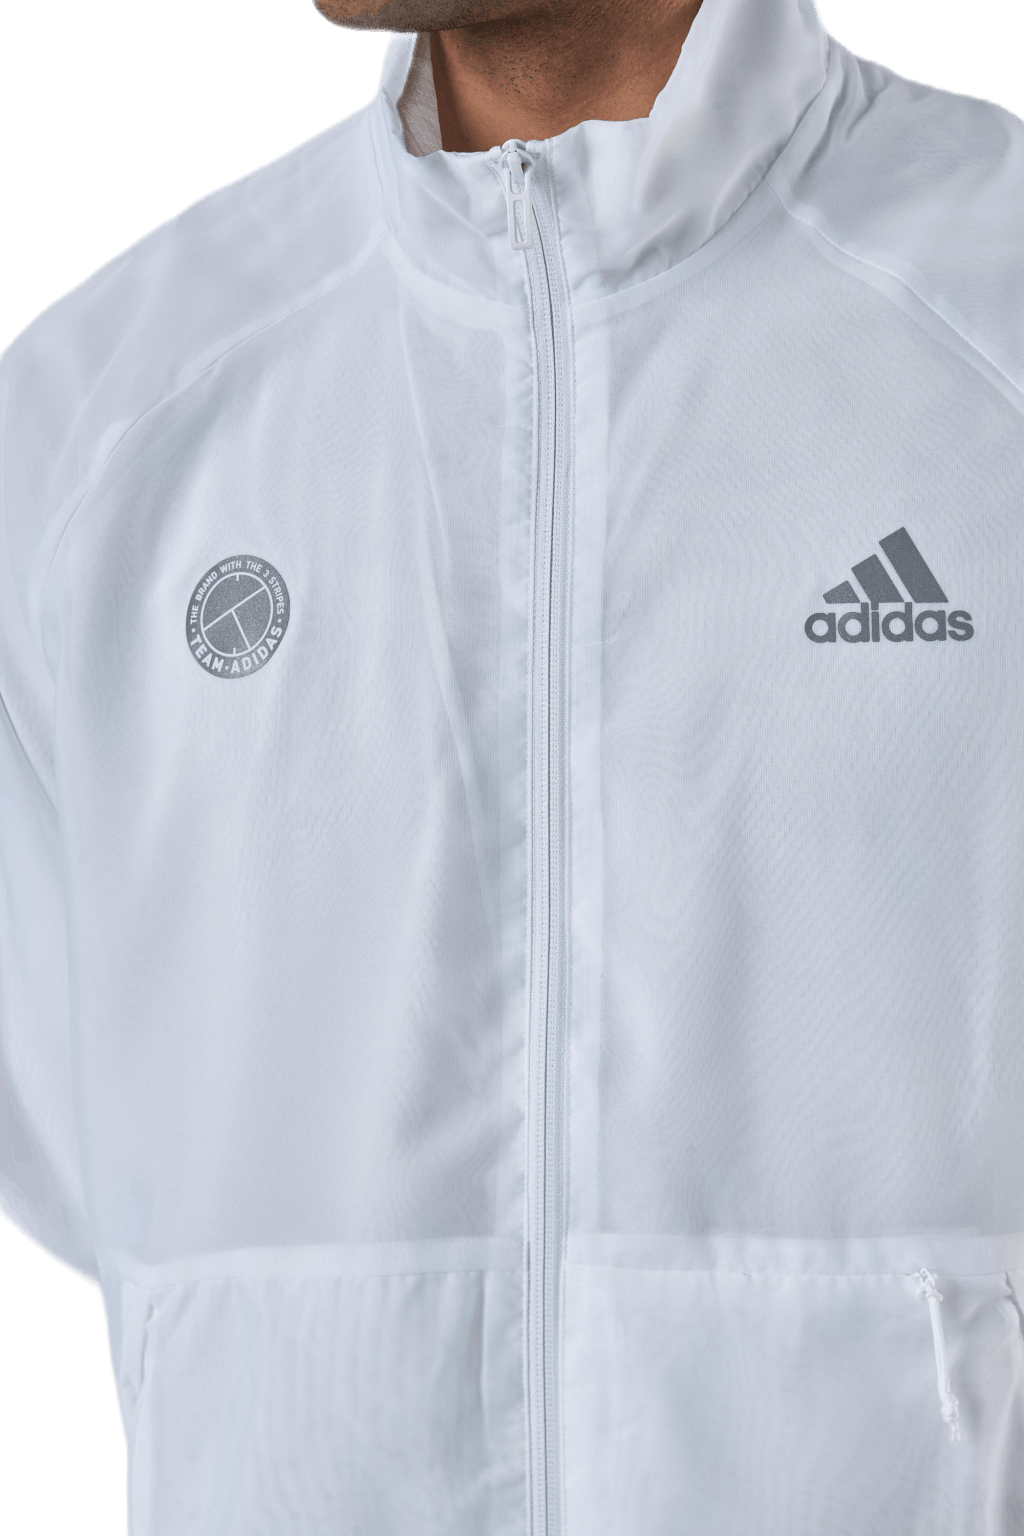 Tennis Jacket Aeroready White/Grey